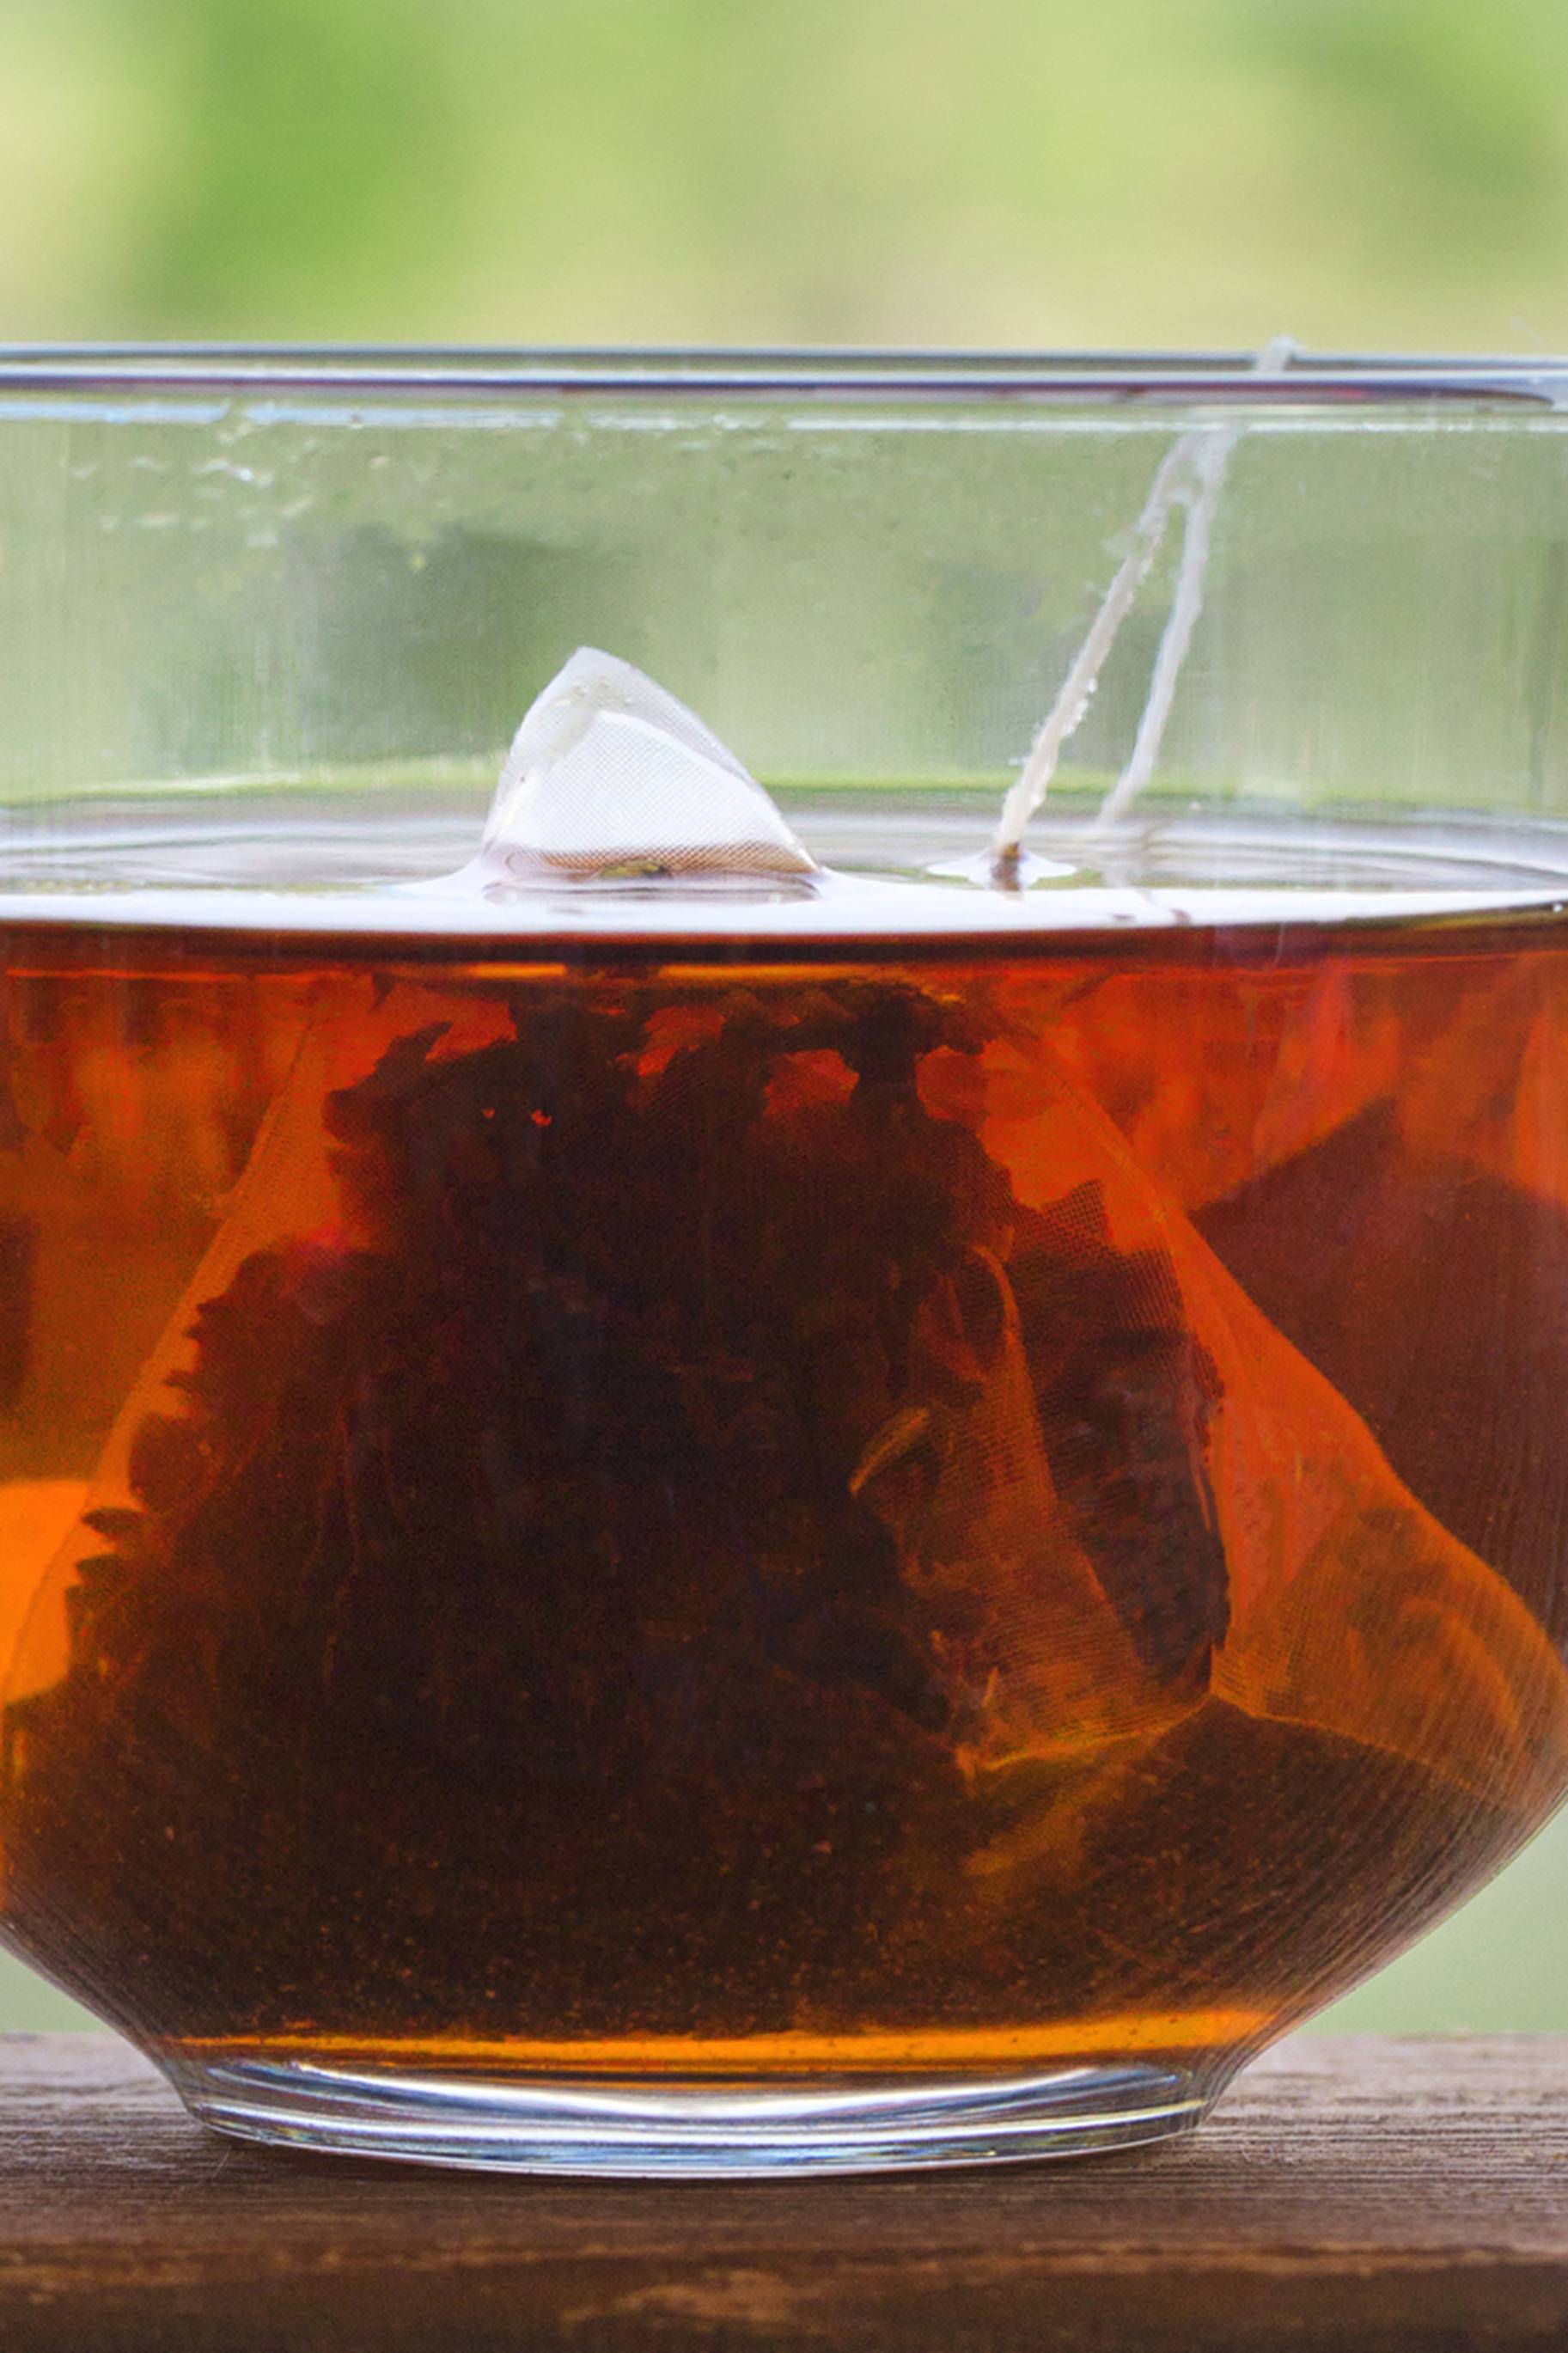 Nevjerojatan trik čisti staklene površine - samo s vrećicom čaja